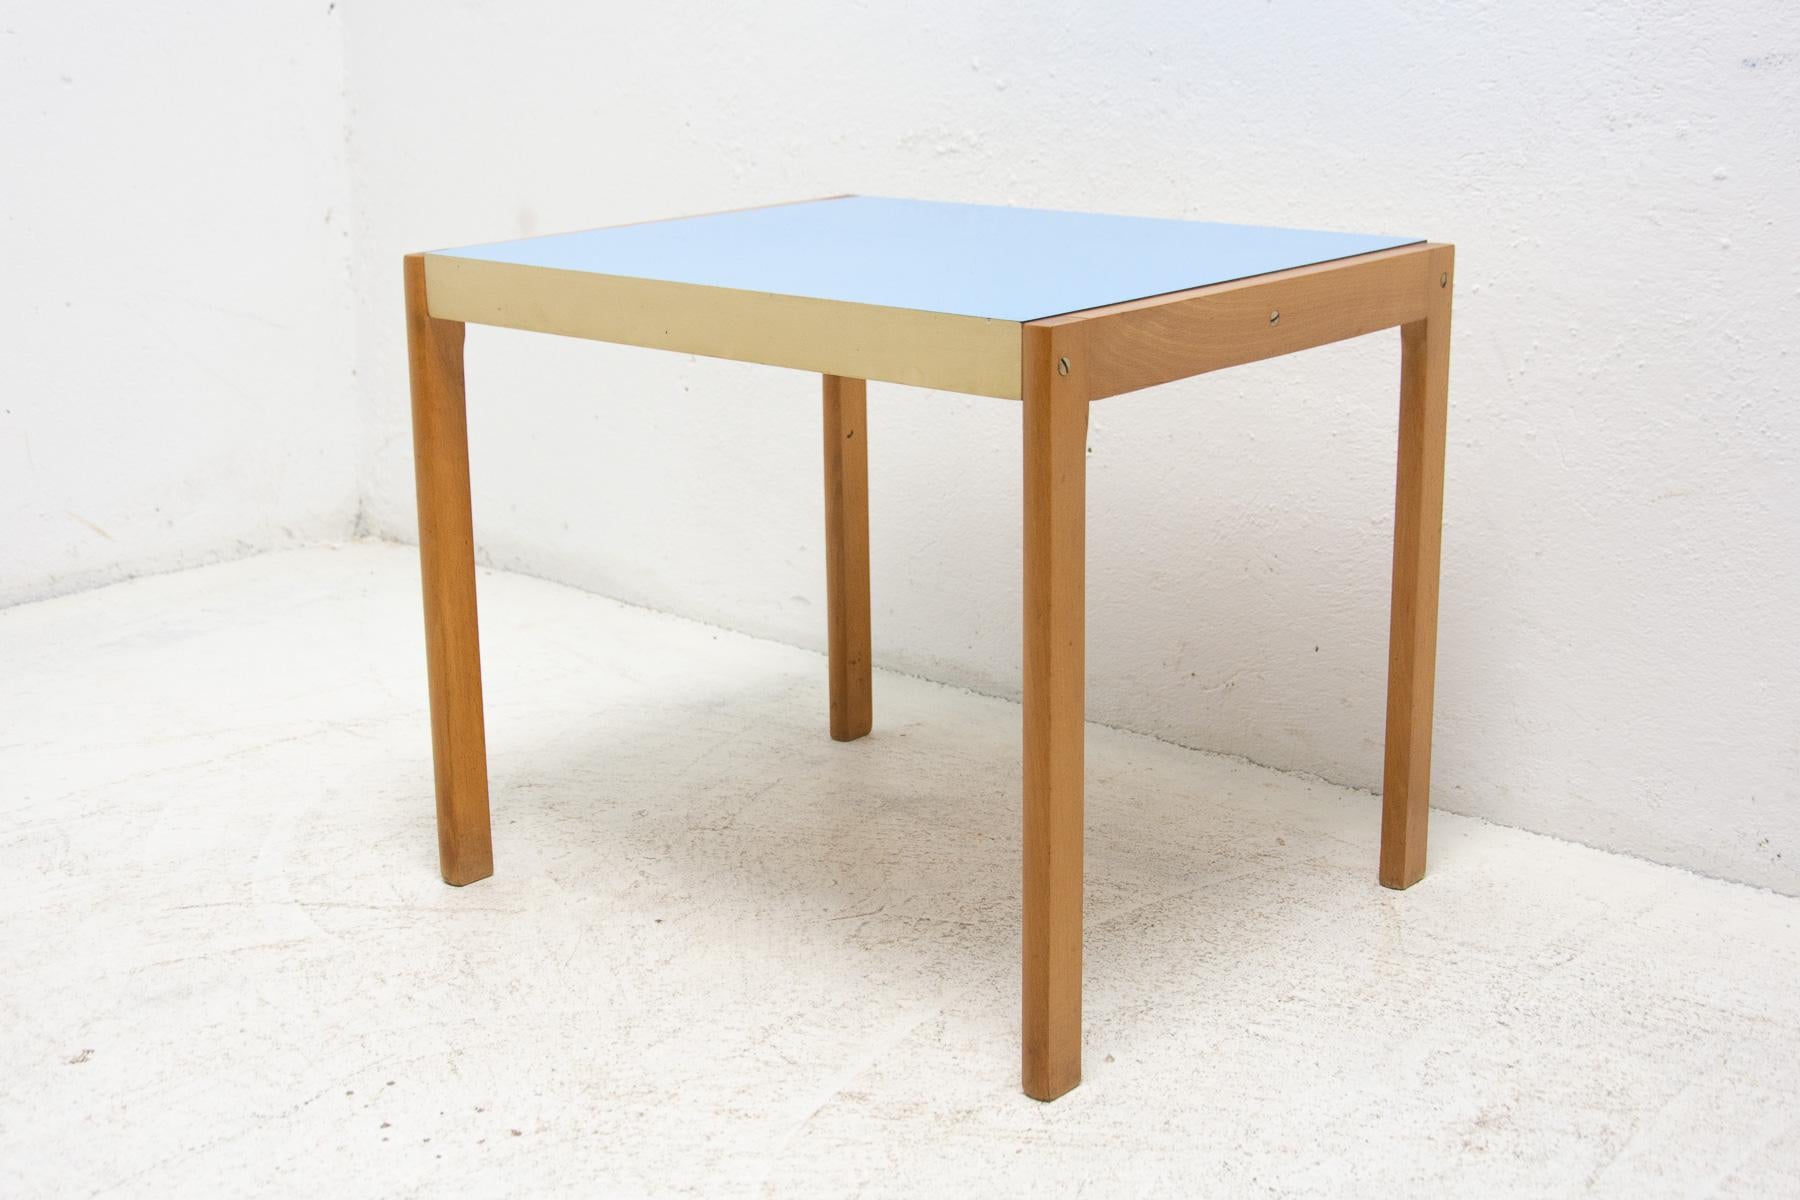 Cette petite table d'appoint ou table basse Vintage a été fabriquée par la société TON dans l'ancienne Tchécoslovaquie en 1979.

MATERIAL : formica, hêtre, contreplaqué. Une pièce rétro cool. En bon état Vintage, montrant de légers signes d'âge et